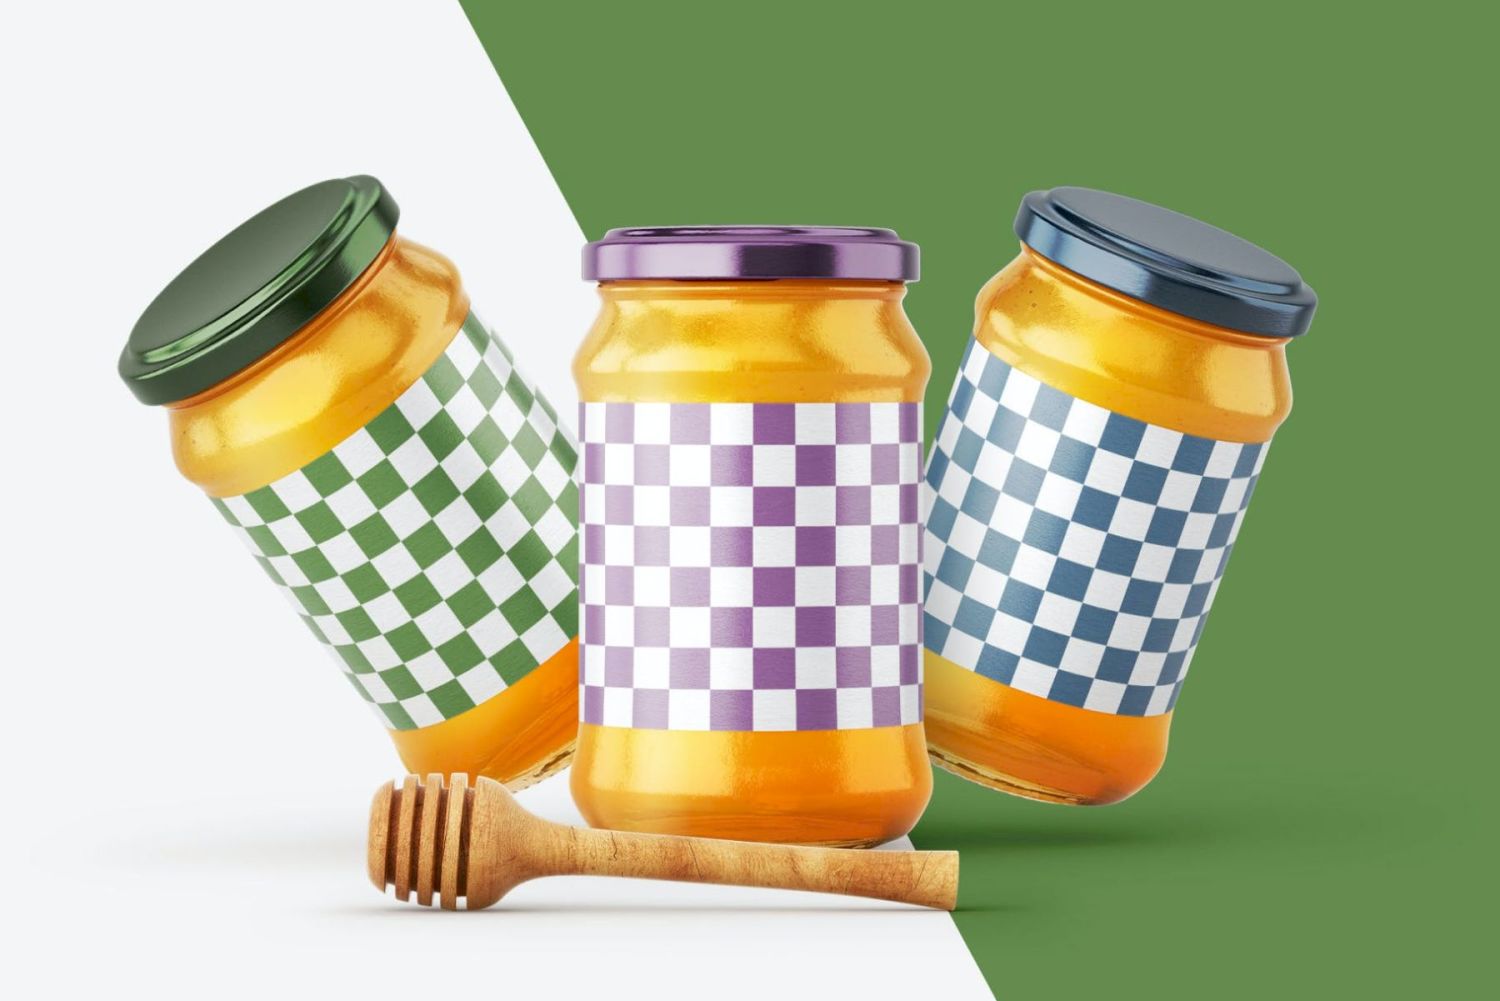 带北斗的蜂蜜罐样机套装 Honey Jar Mockup Set With Dipper插图2